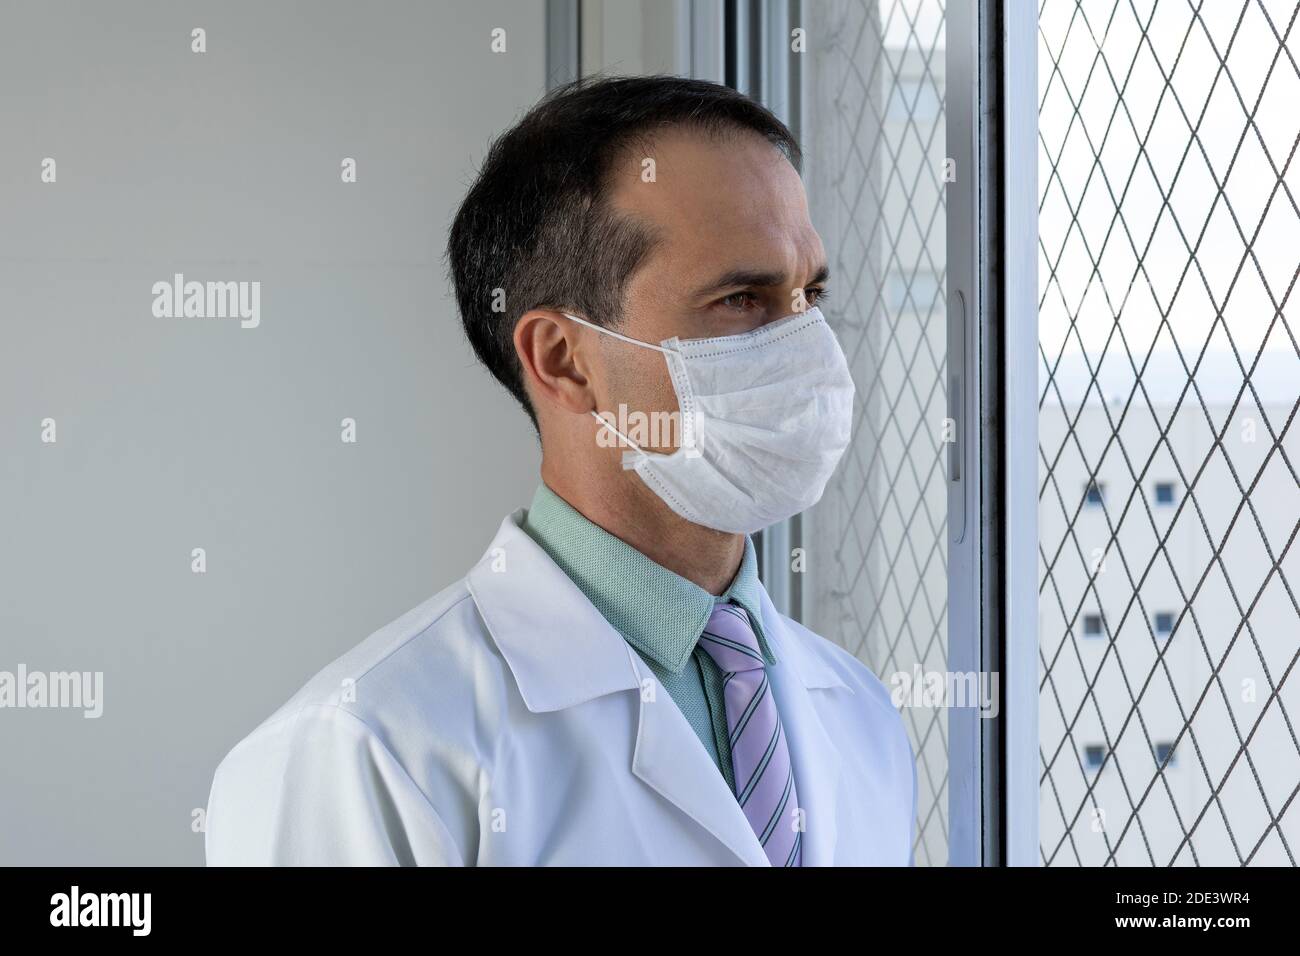 doctor de 44 años, sonriendo, en un abrigo blanco y corbata, mirando la cámara. Foto de stock